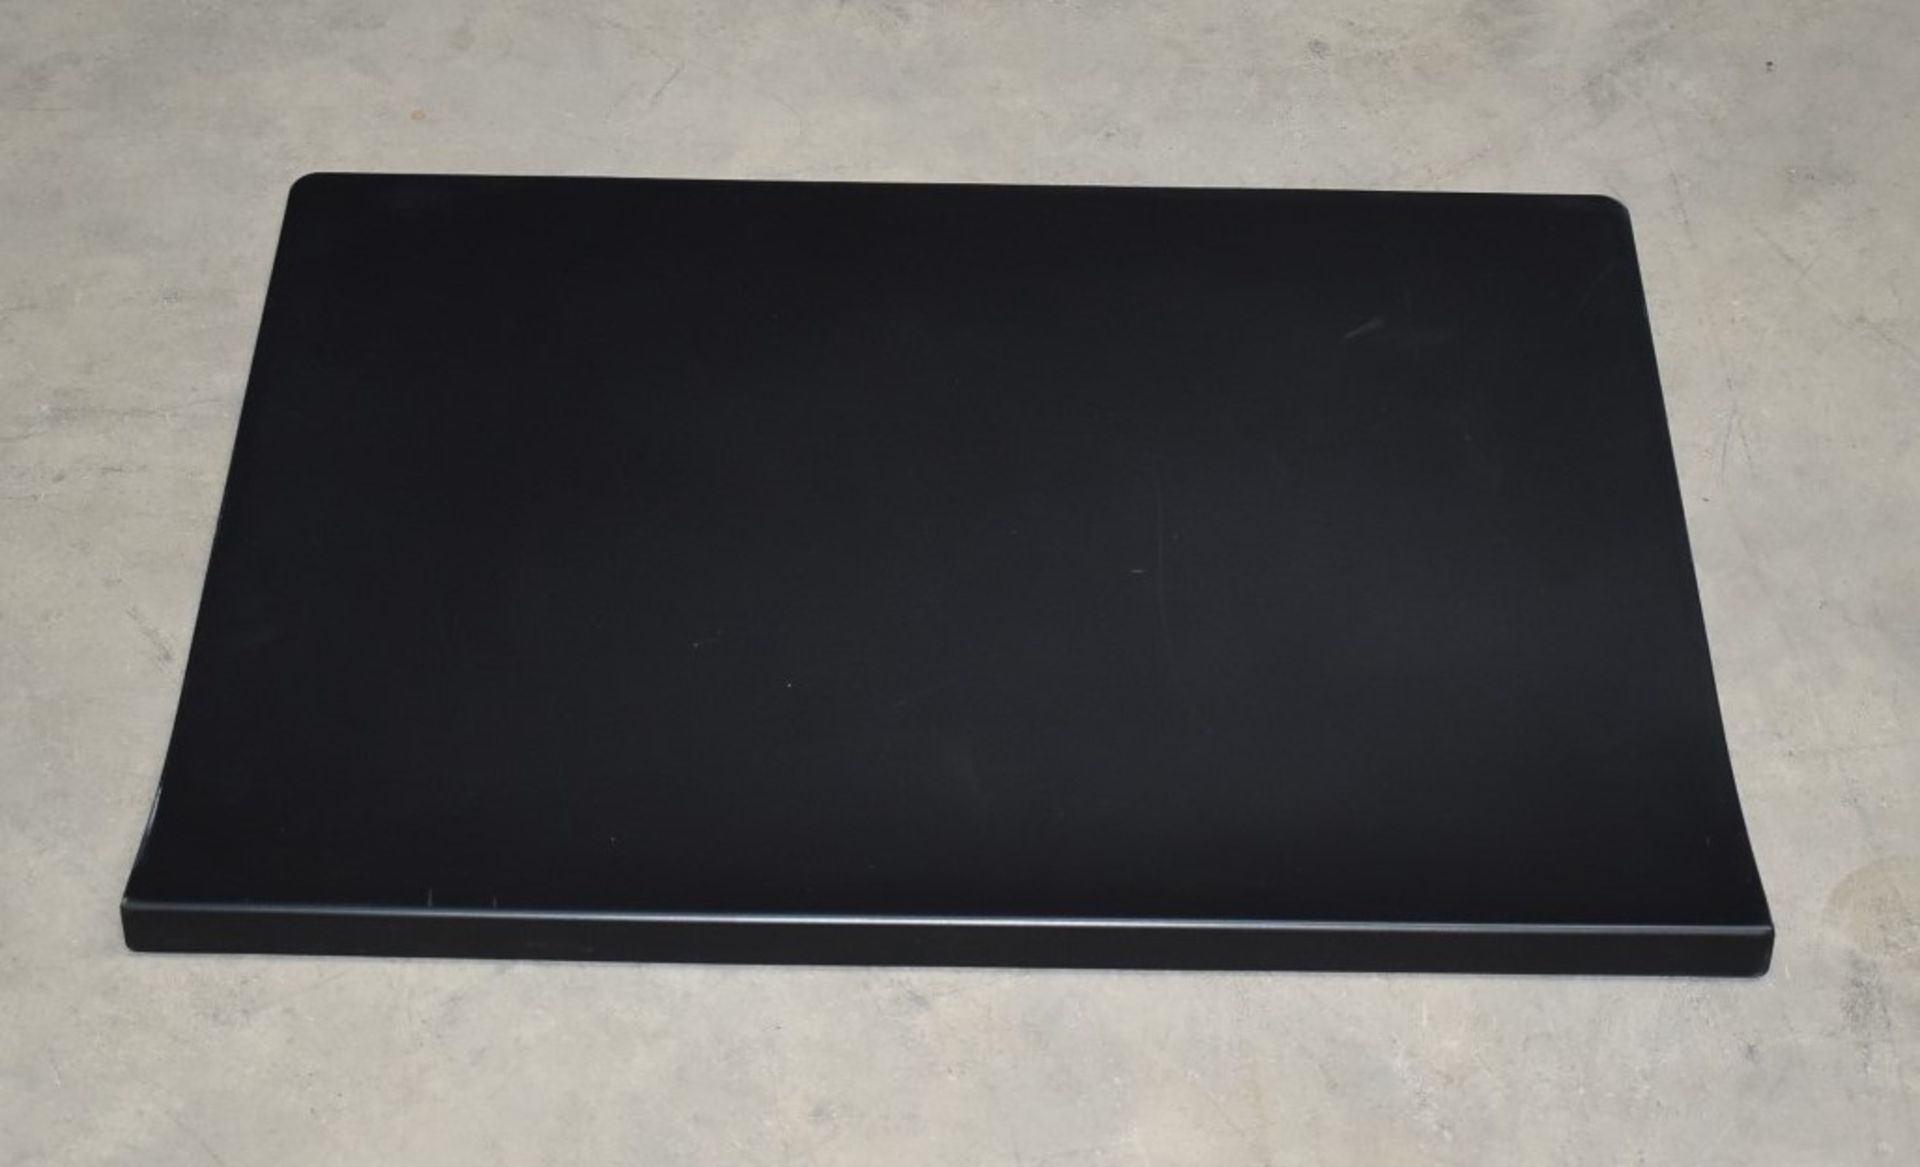 1 x Vitra Joyn Desk Pad in Black - Designed by Ronan & Erwan Bouroullec - Size: 70 x 50 cms - RRP £ - Image 5 of 7